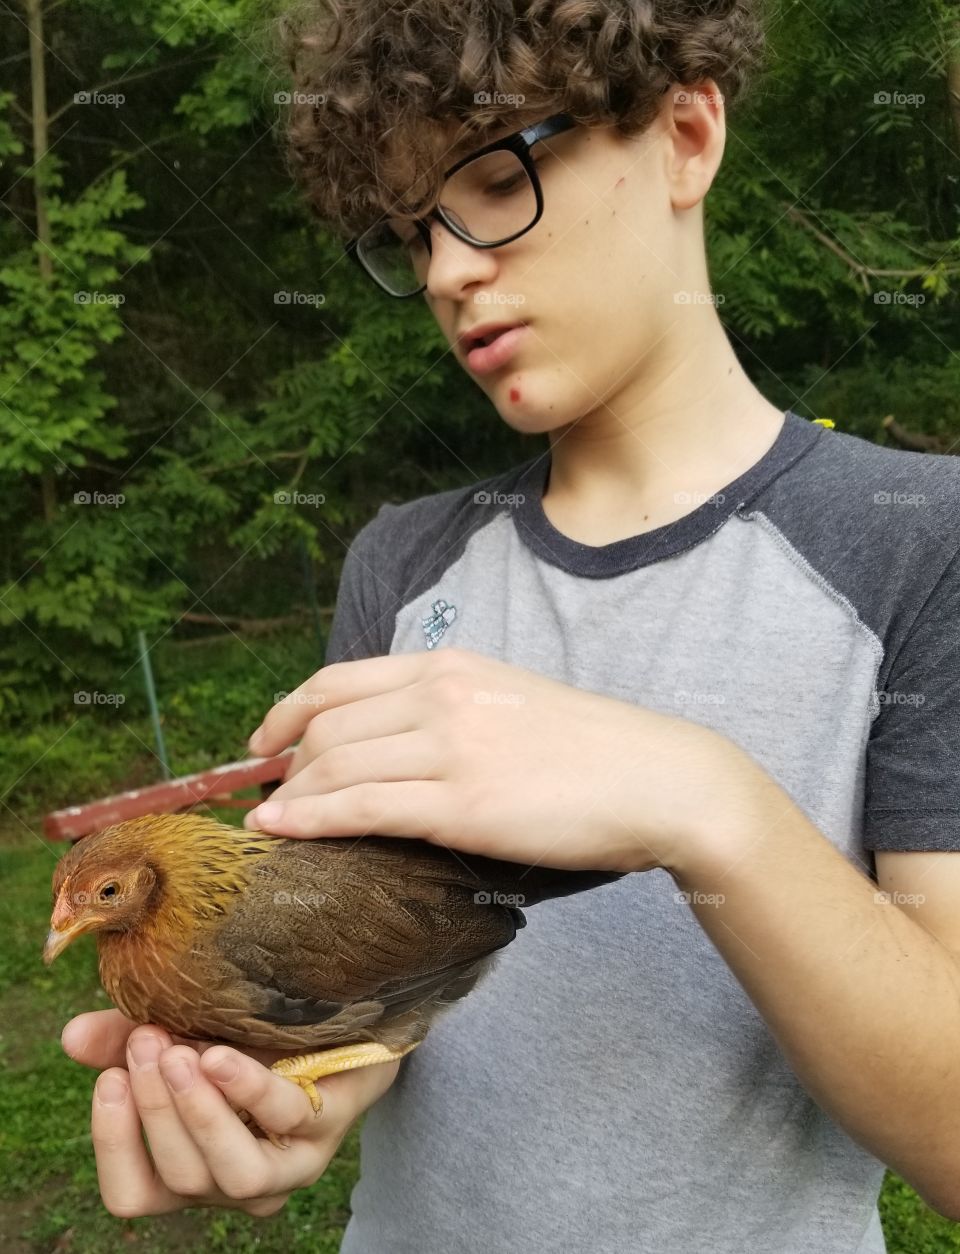 Friendly Chicken